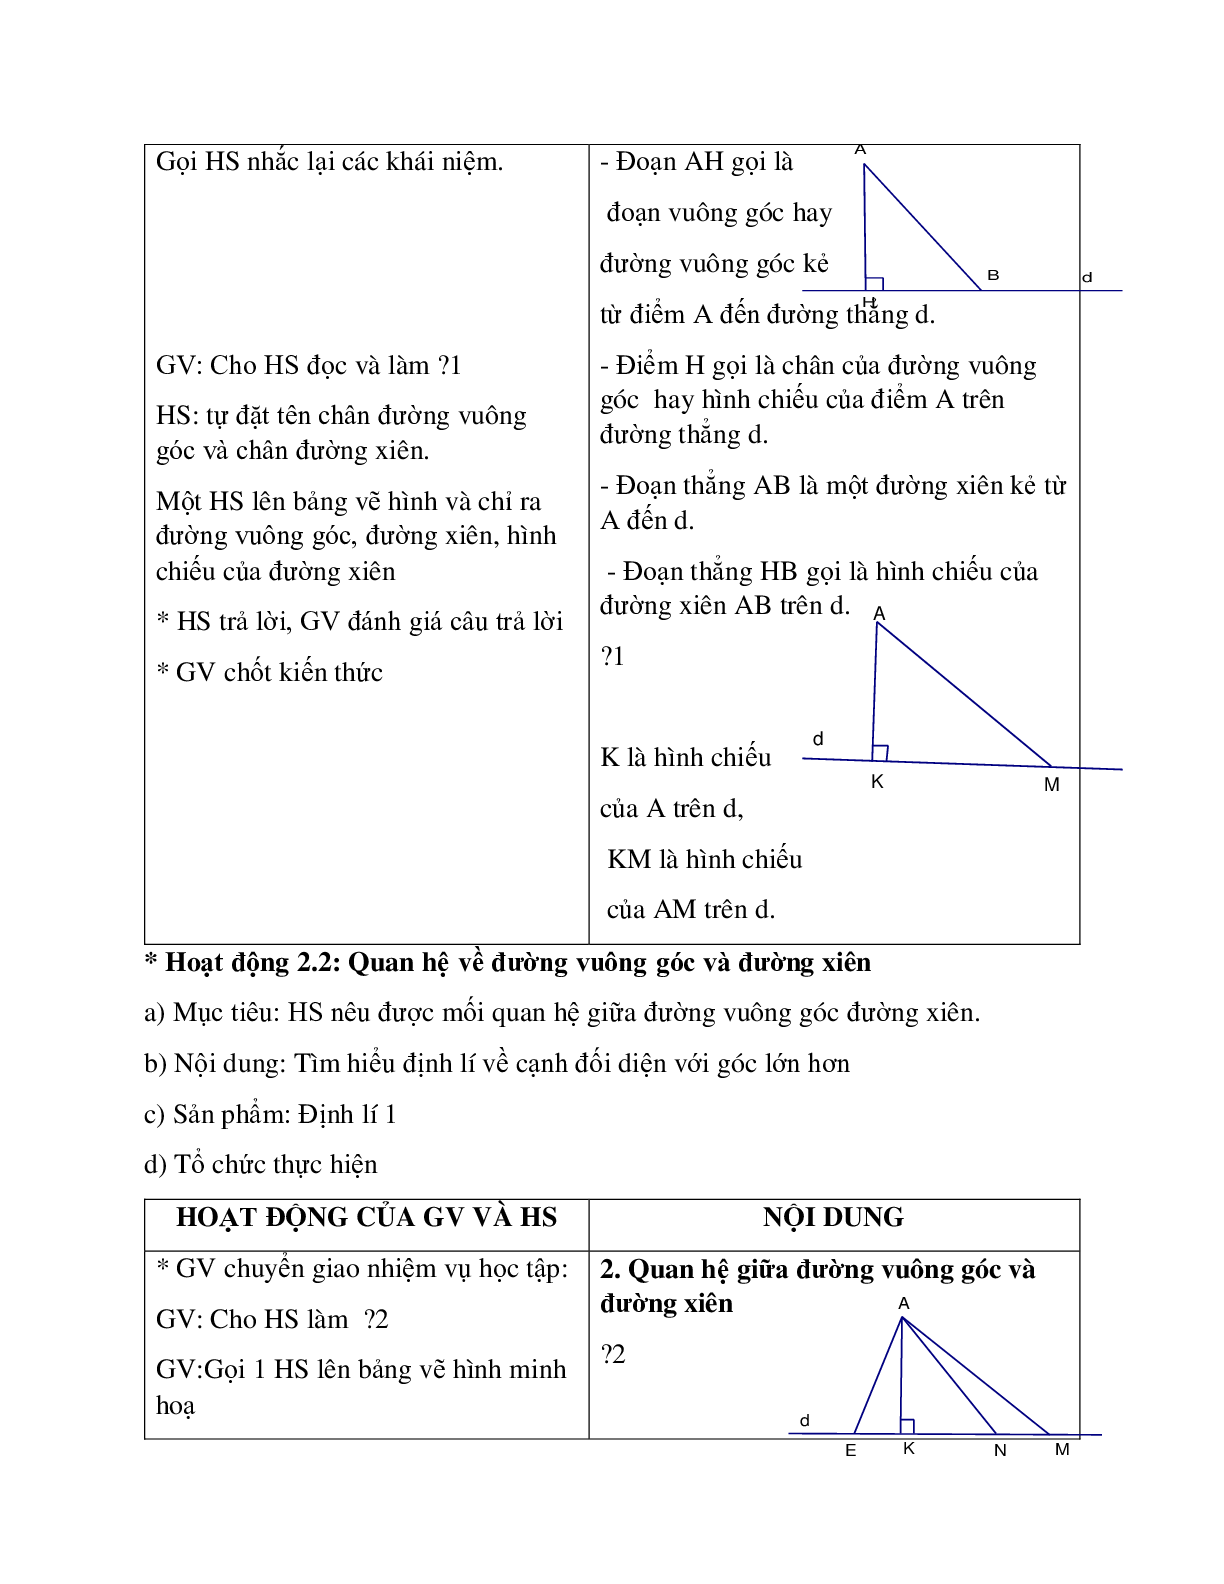 Giáo án Toán học 7 bài 2: Quan hệ giữa đường vuông góc và đường xiên, đường xiên và hình chiếu chuẩn nhất (trang 3)